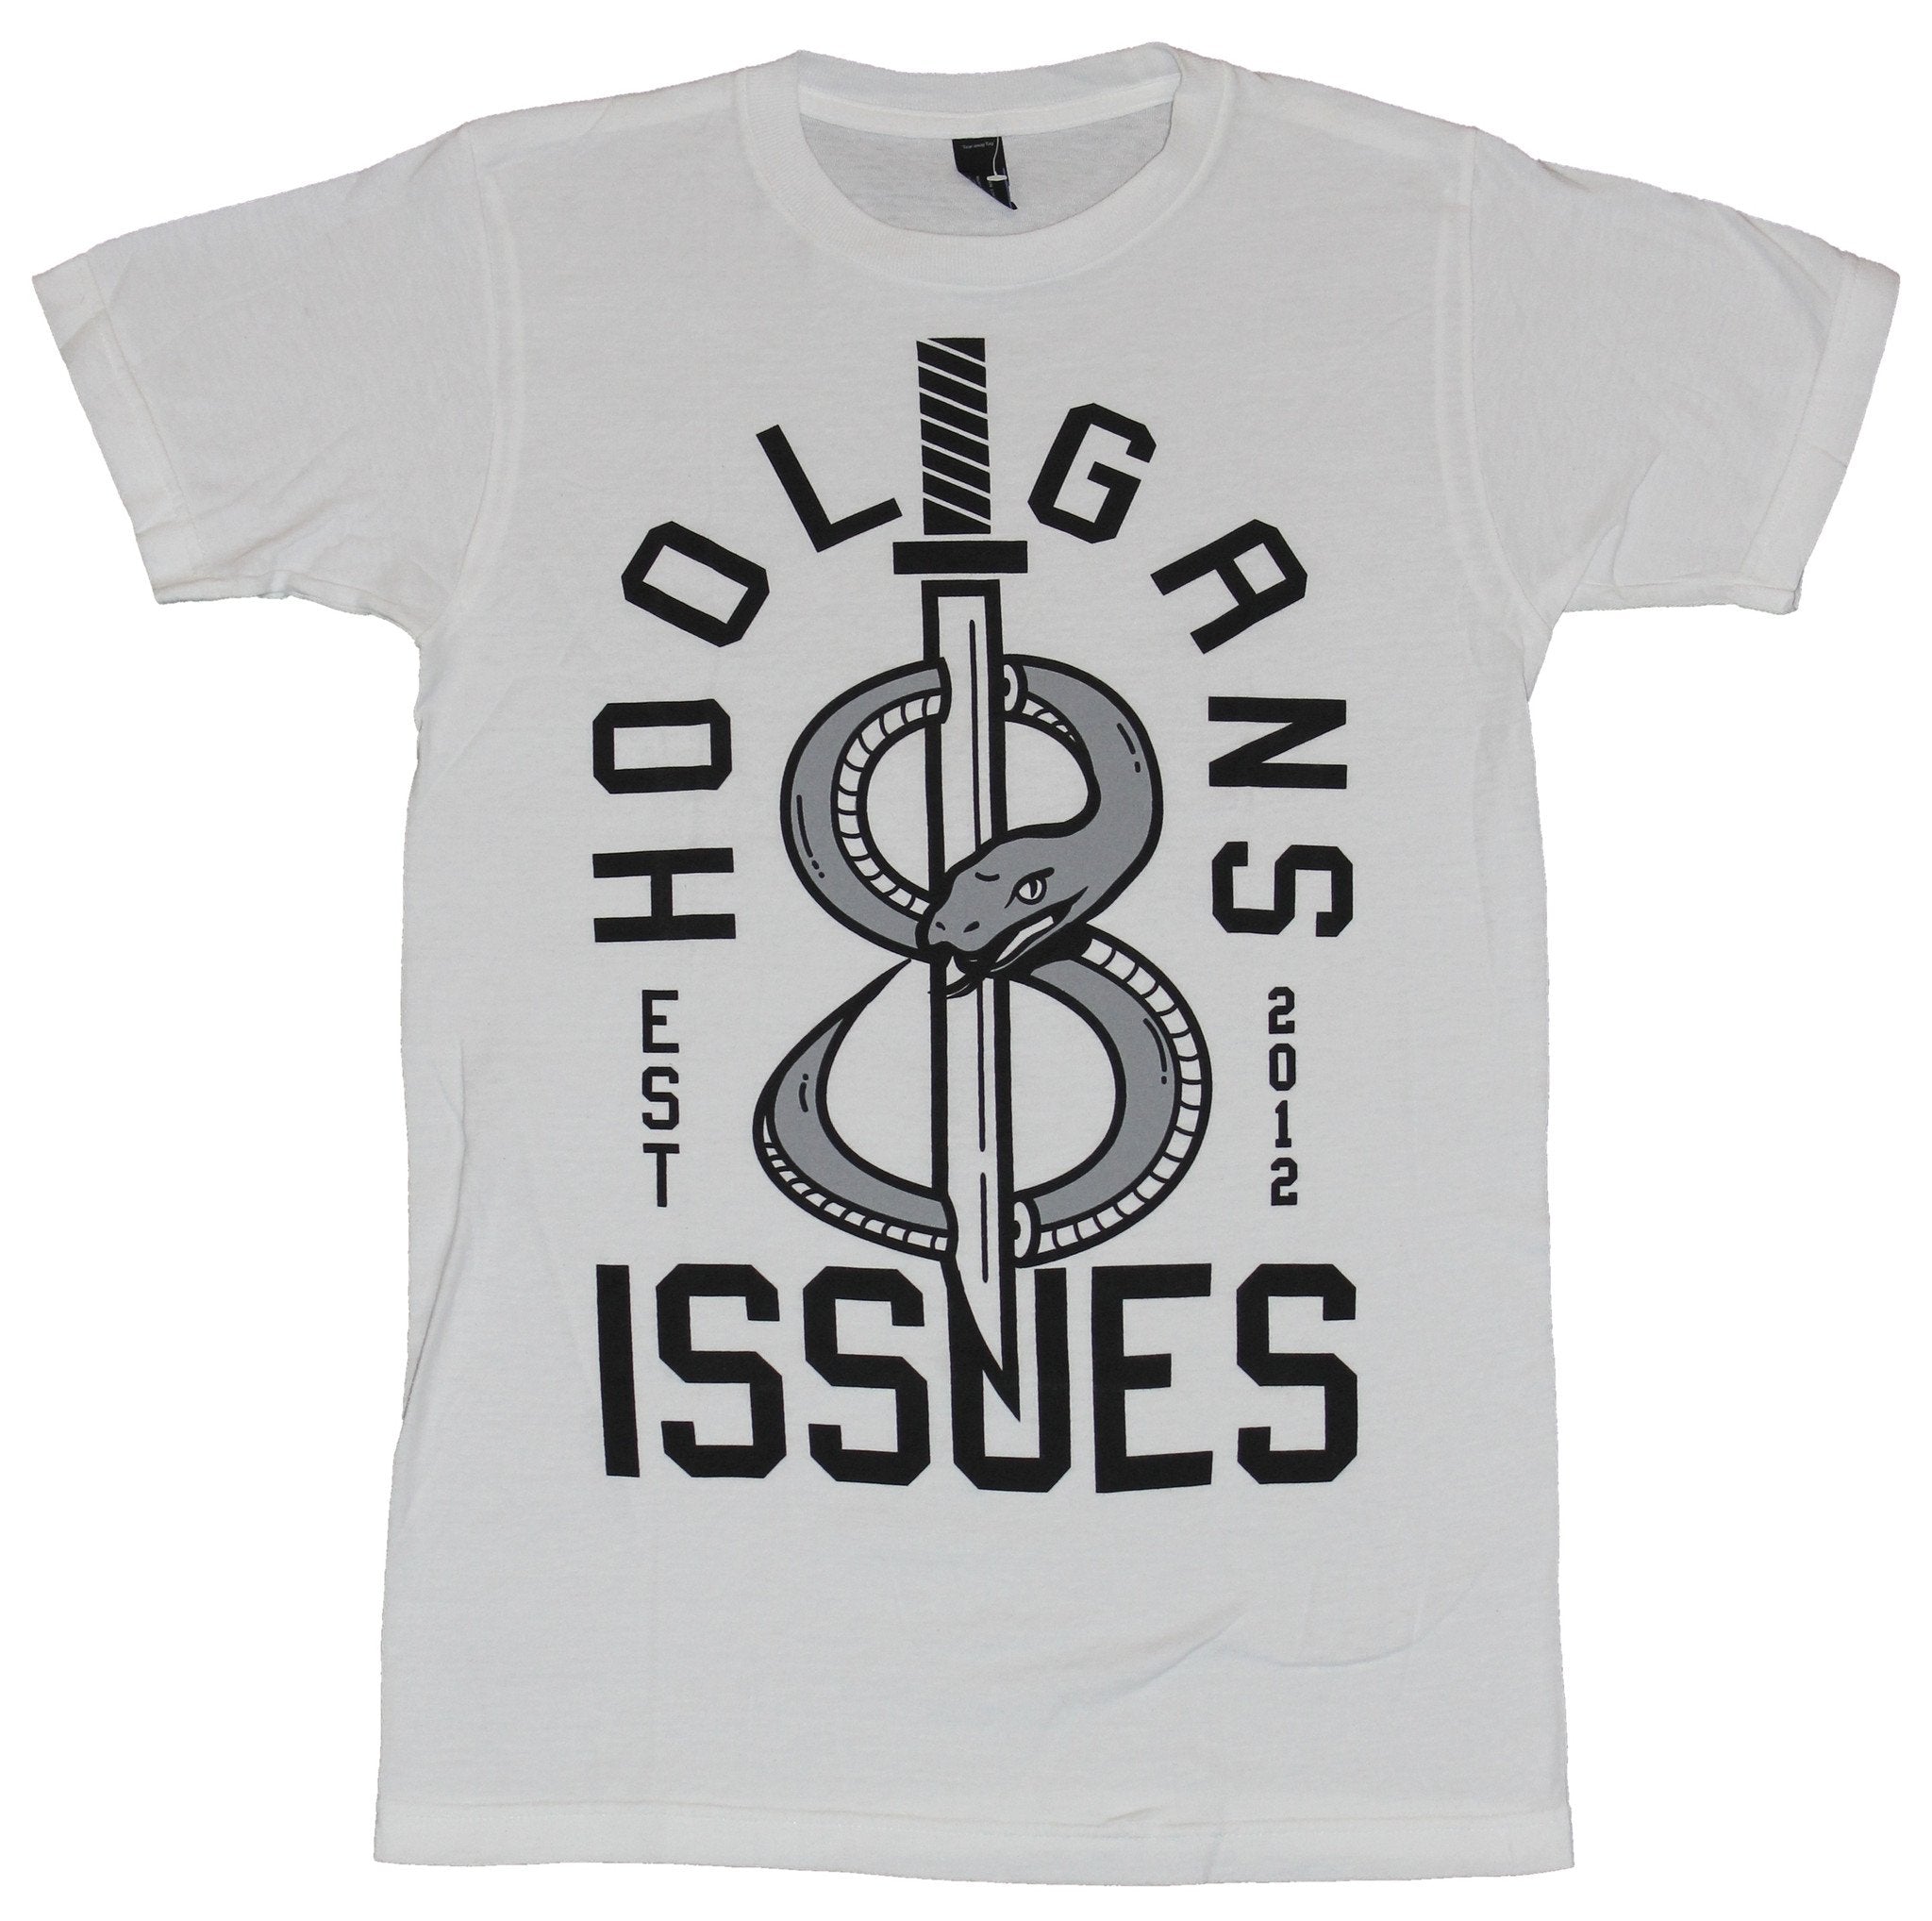 Issues  Mens T-Shirt - Hooligans Dagger Snake Image Established 2012